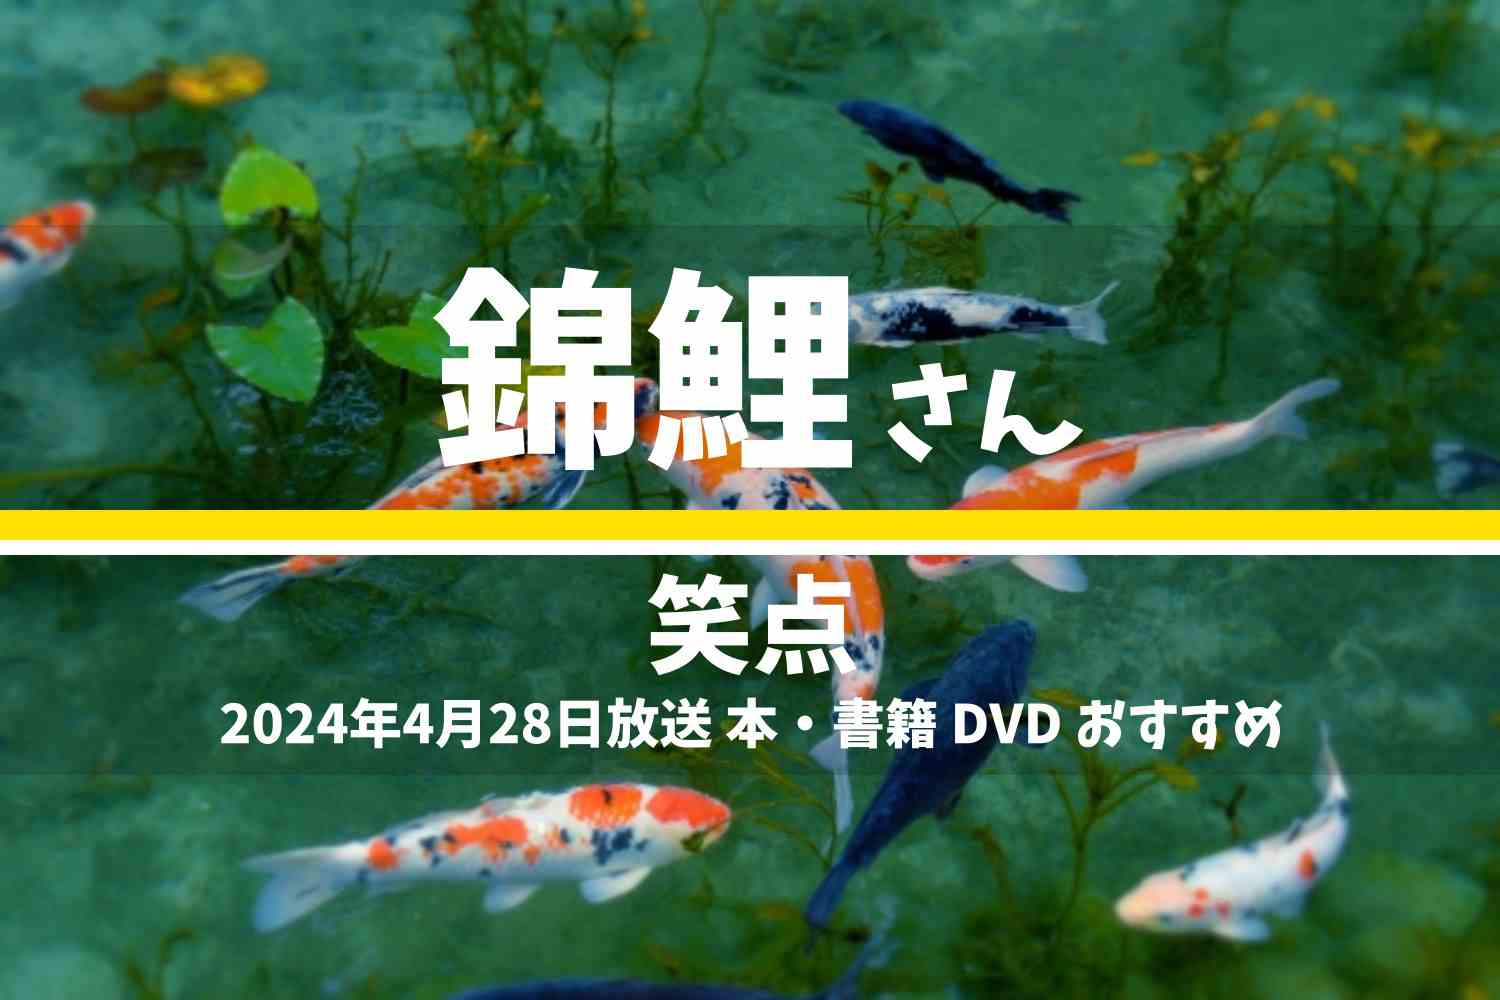 笑点 サンドウィッチマン テレビ番組 本 DVD 2024年4月28日放送